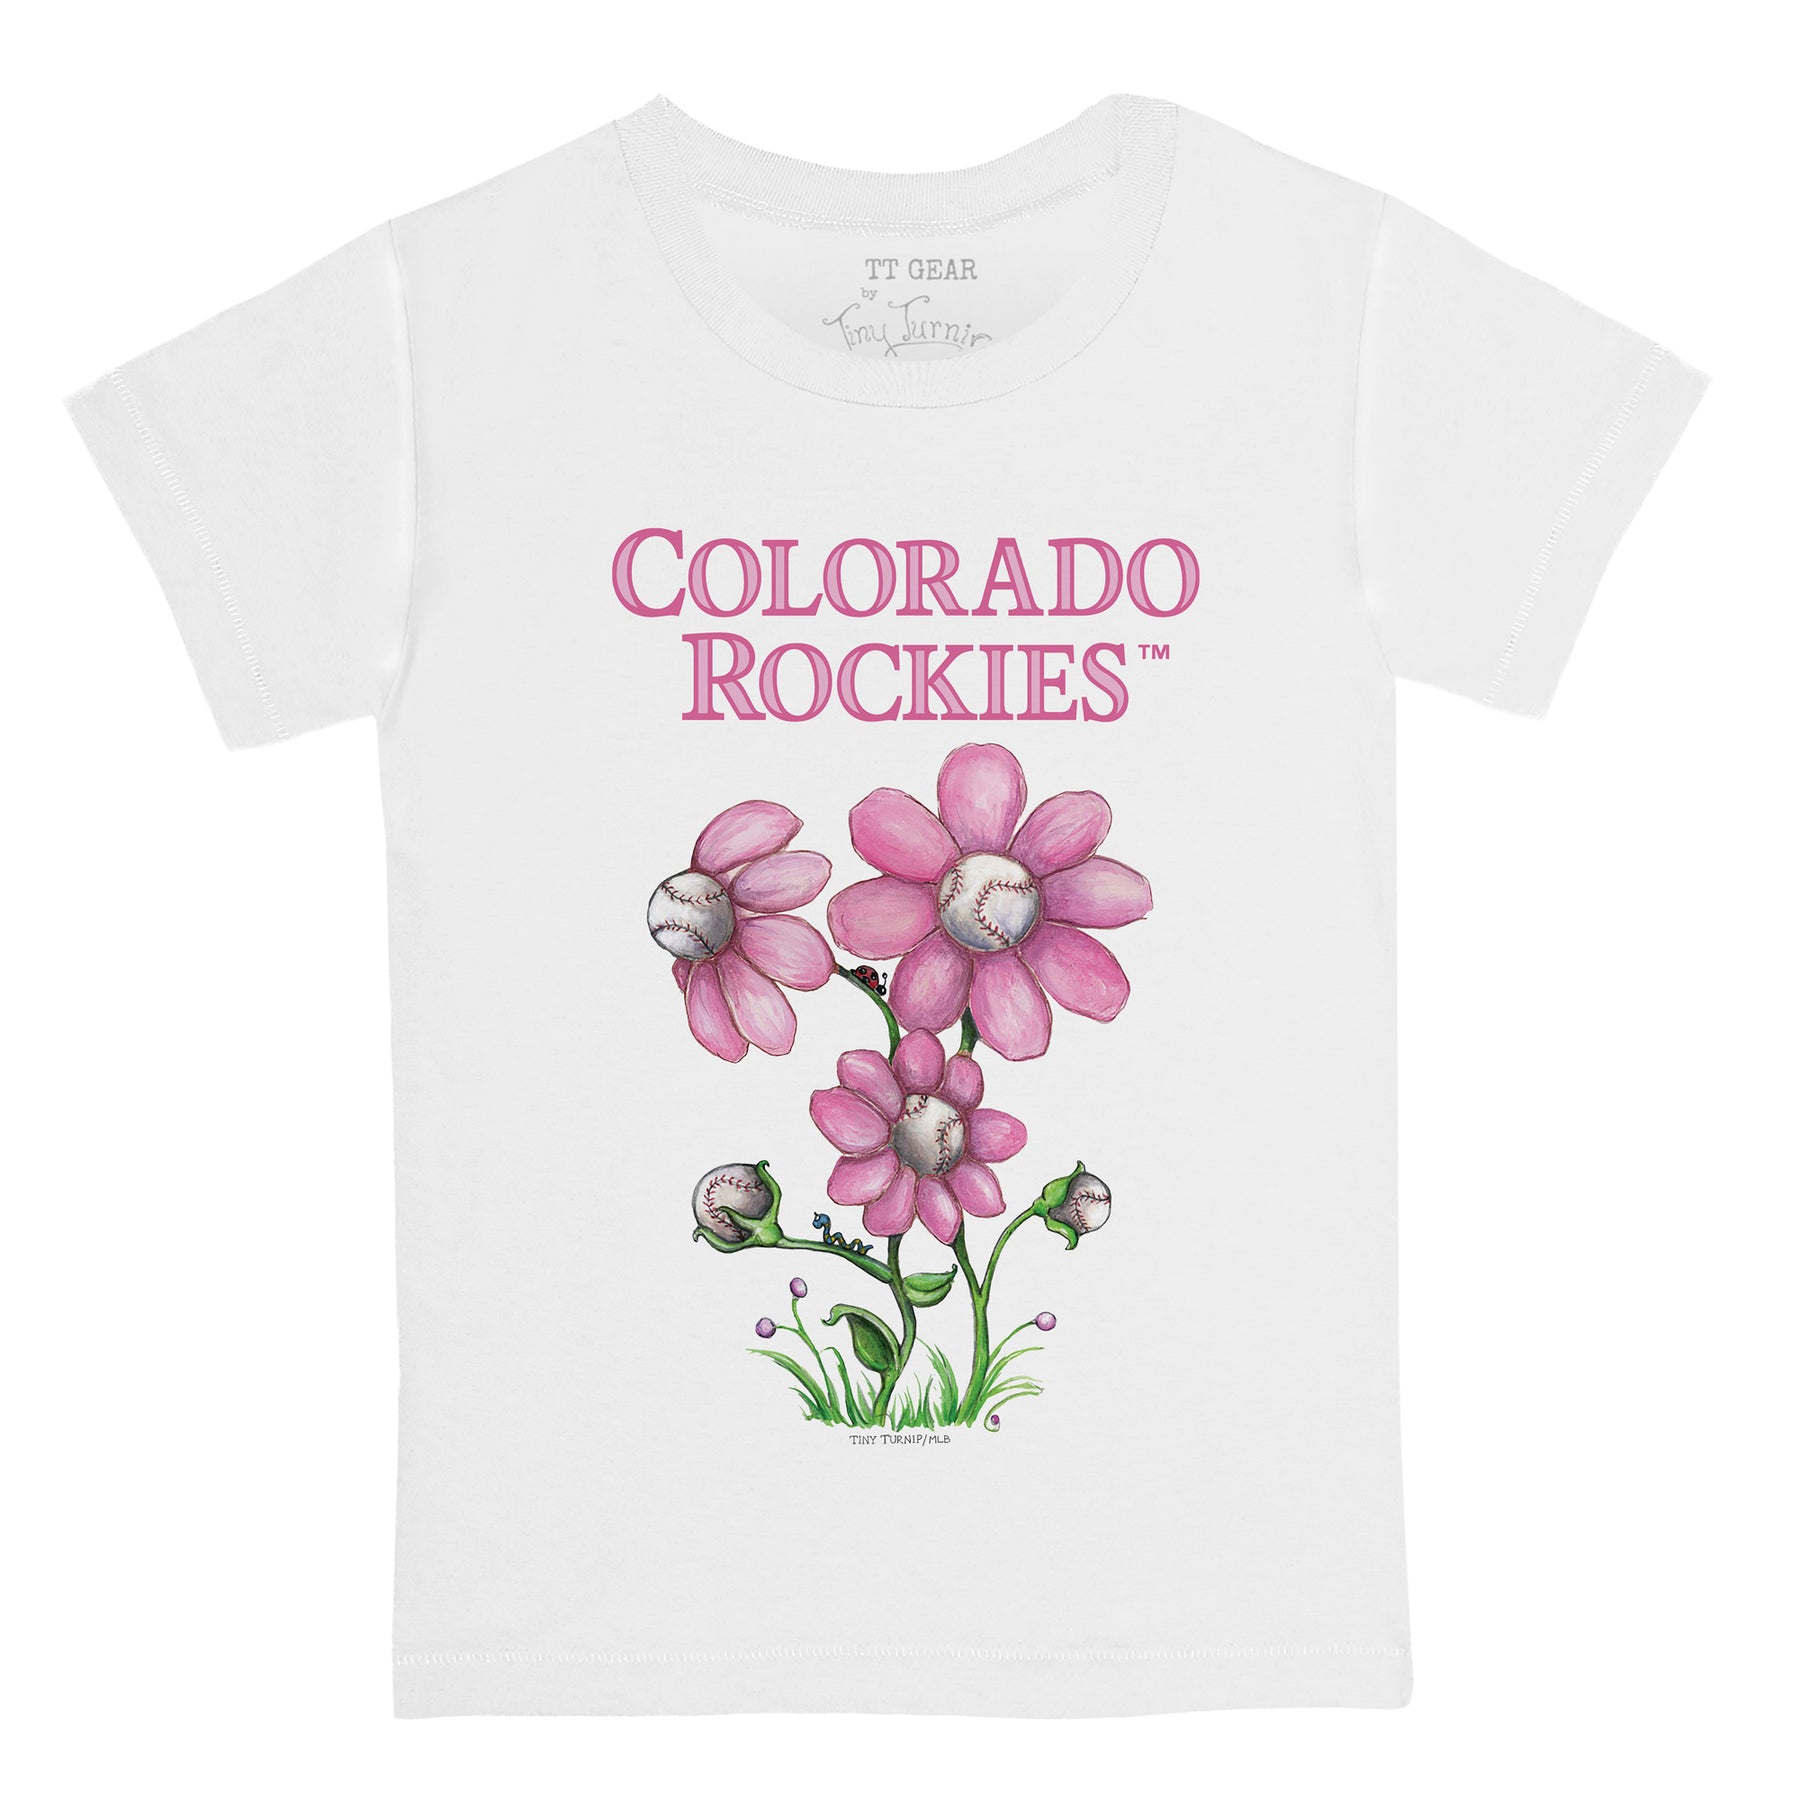 Colorado Rockies Blooming Baseballs Tee Shirt